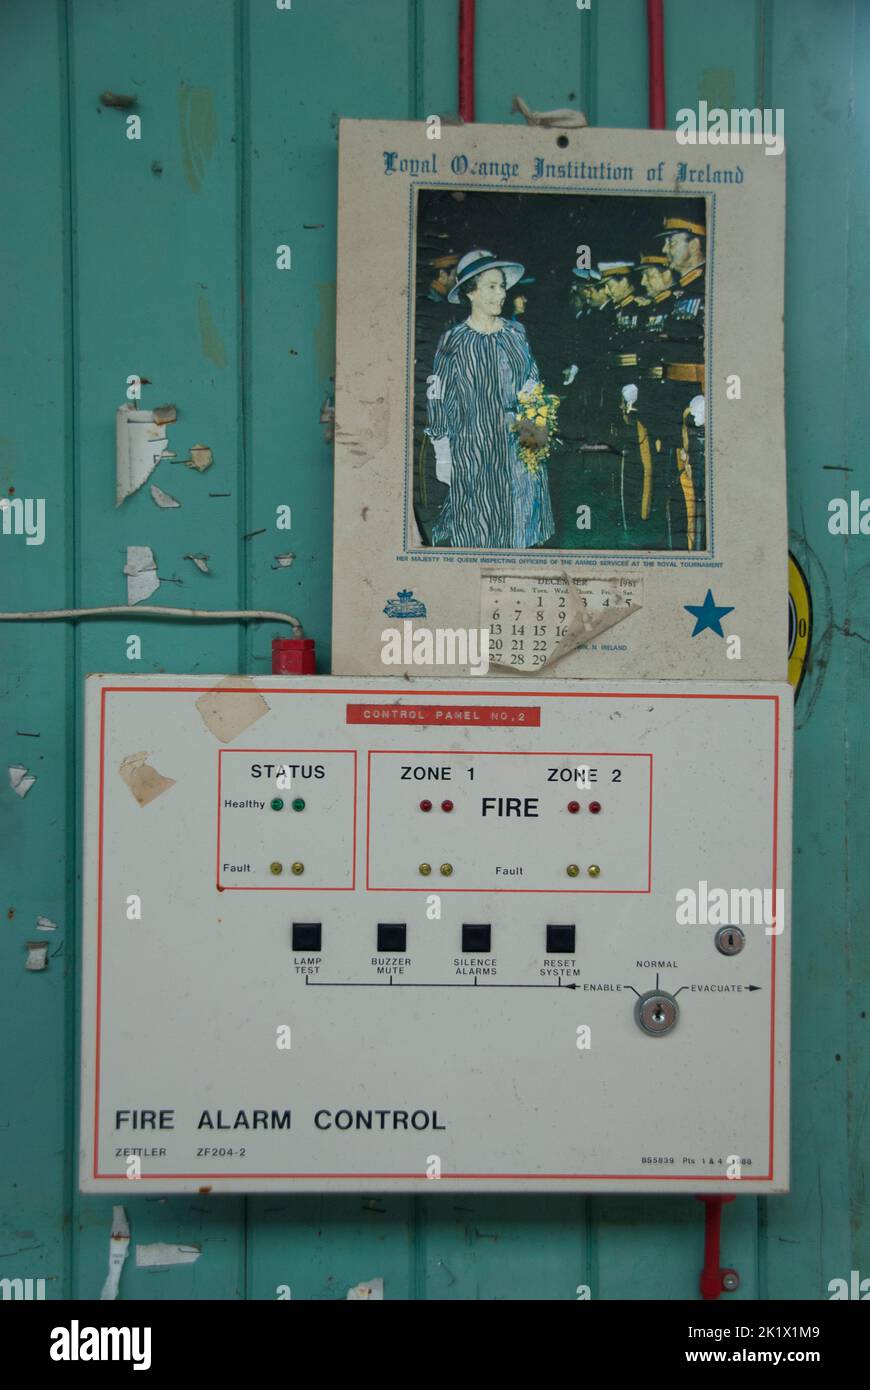 Panel de control de alarma de incendios con un calendario de la institución naranja leal de Irlanda que muestra la visita de la reina a Irlanda del Norte Foto de stock